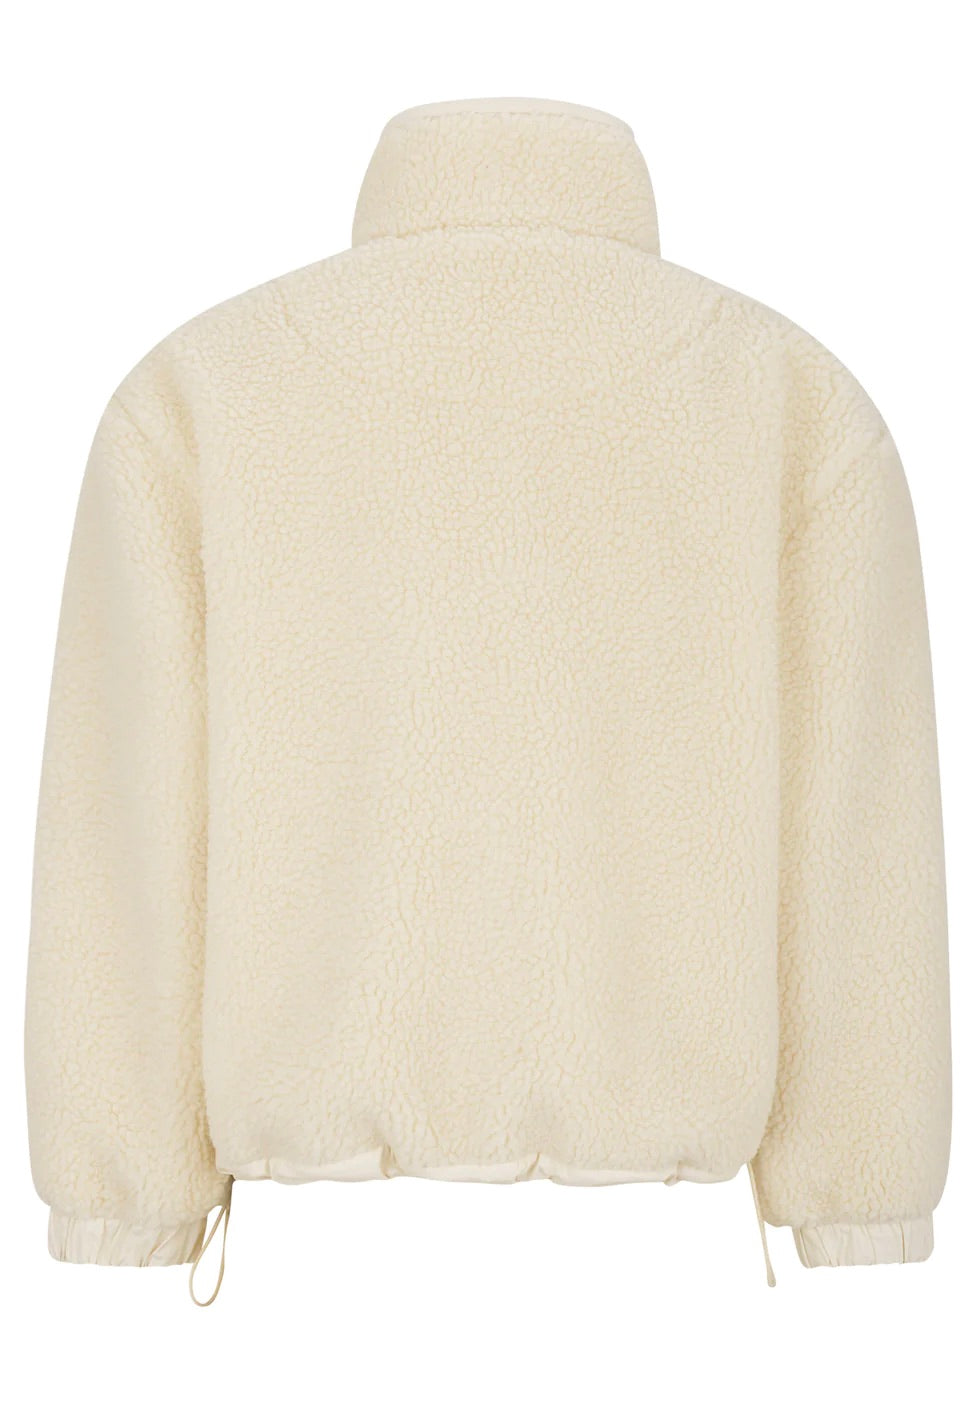 torah sweater buttercream